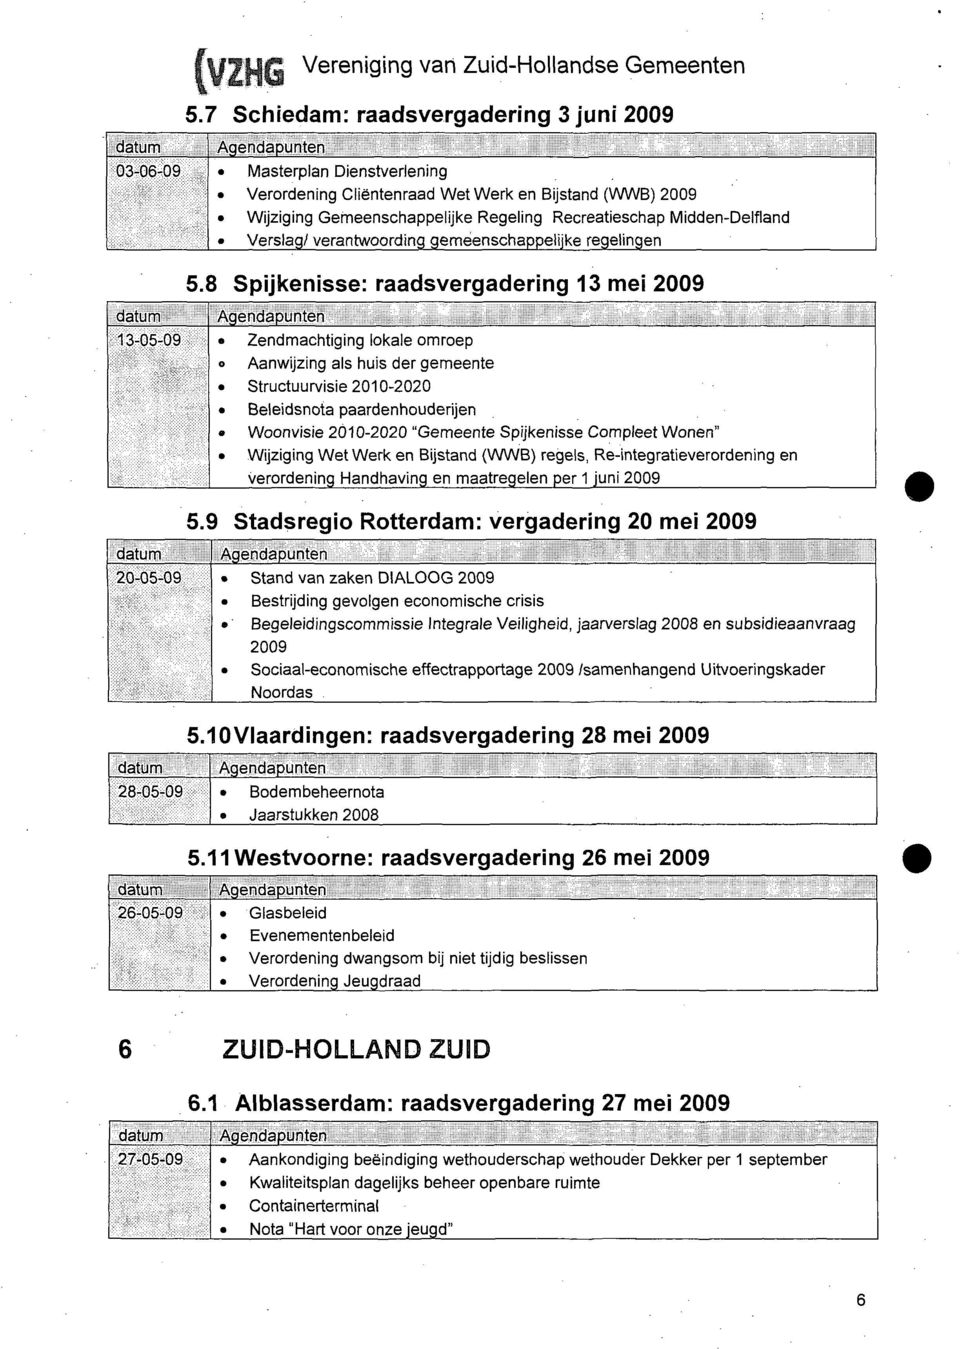 Midden-Delfland Verslag/ verantwoording gemeenschappelijke regelingen 5.